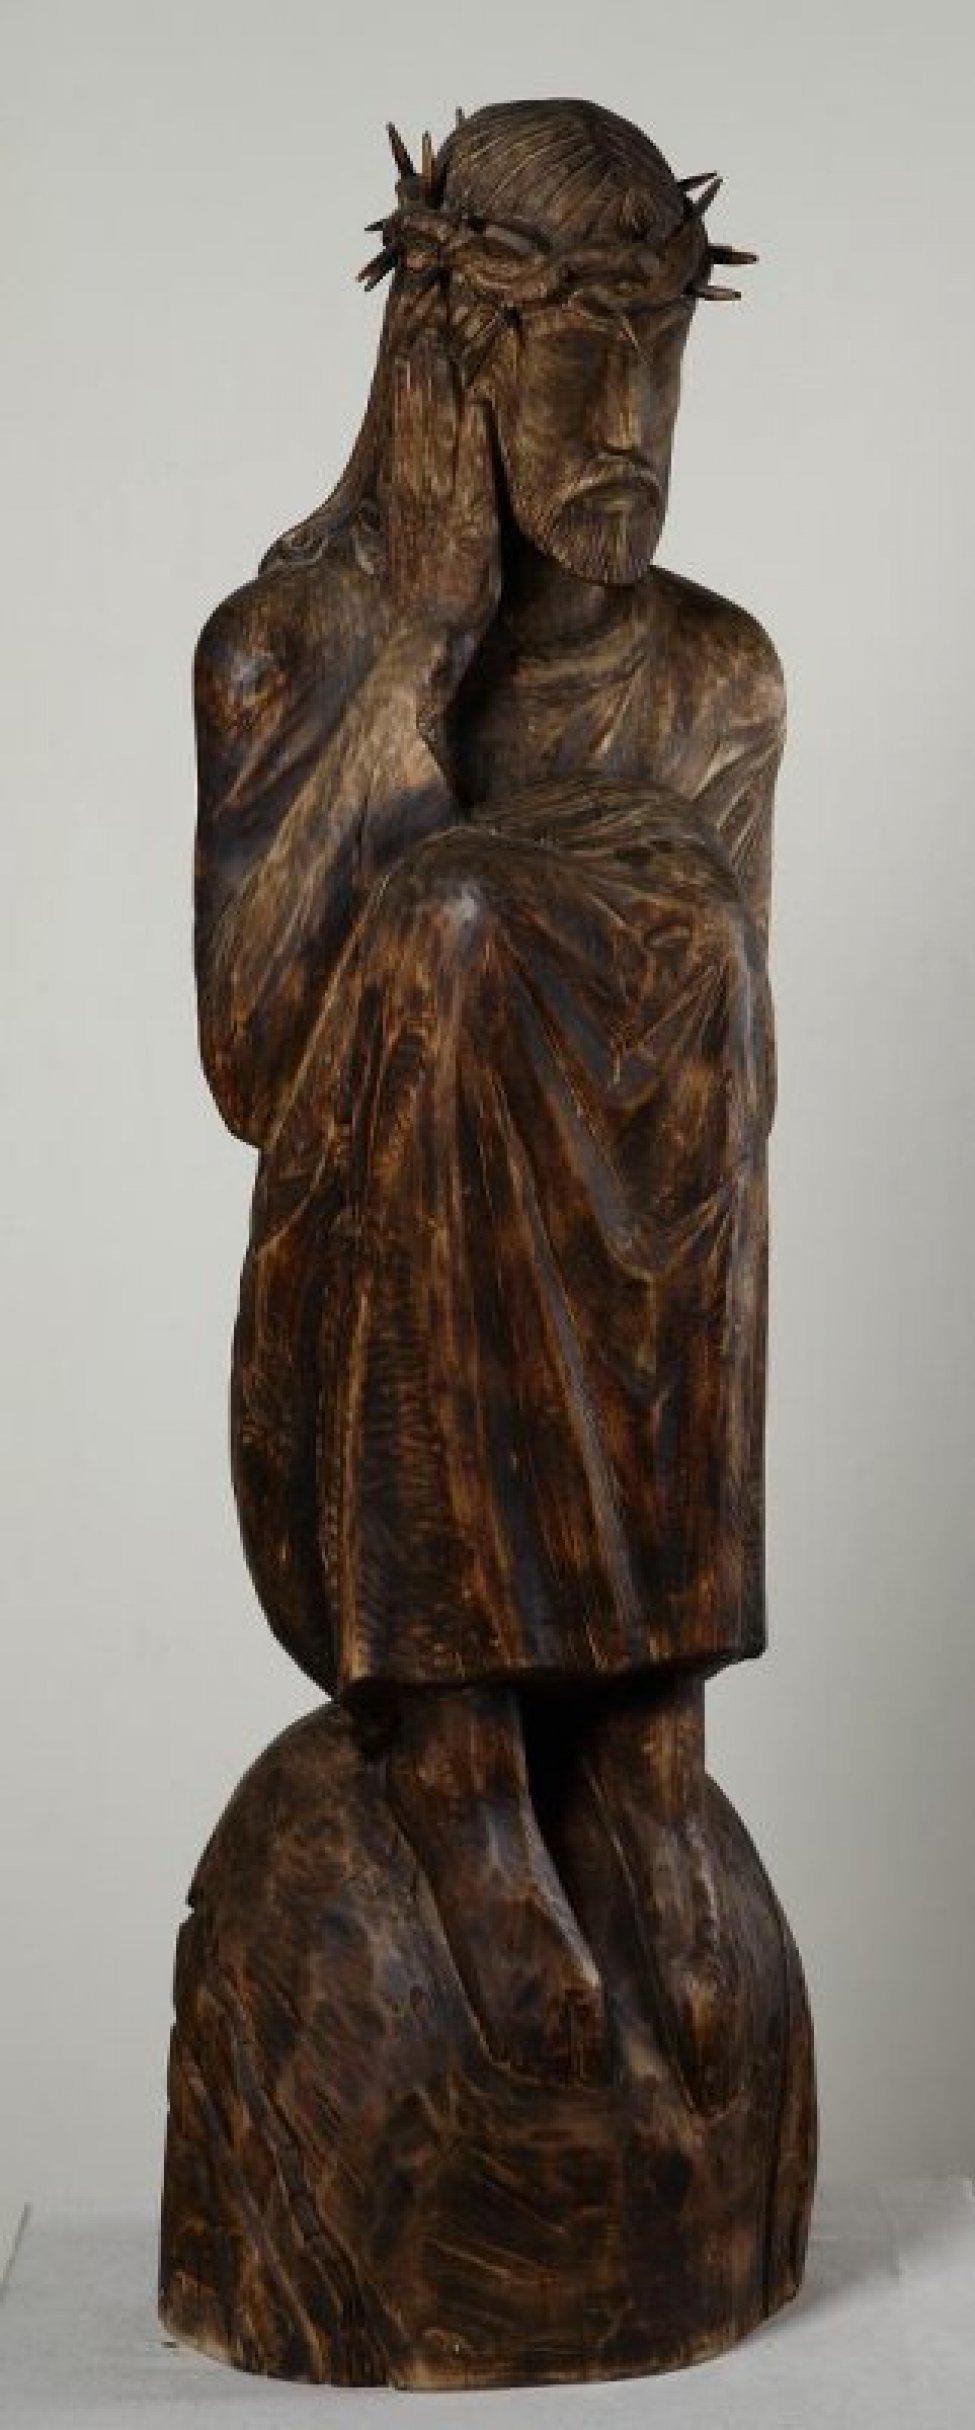 Изображена сидящая фигура Христа в терновом венце, с высоко поднятыми коленями, на полушаре, имитирующем Землю.